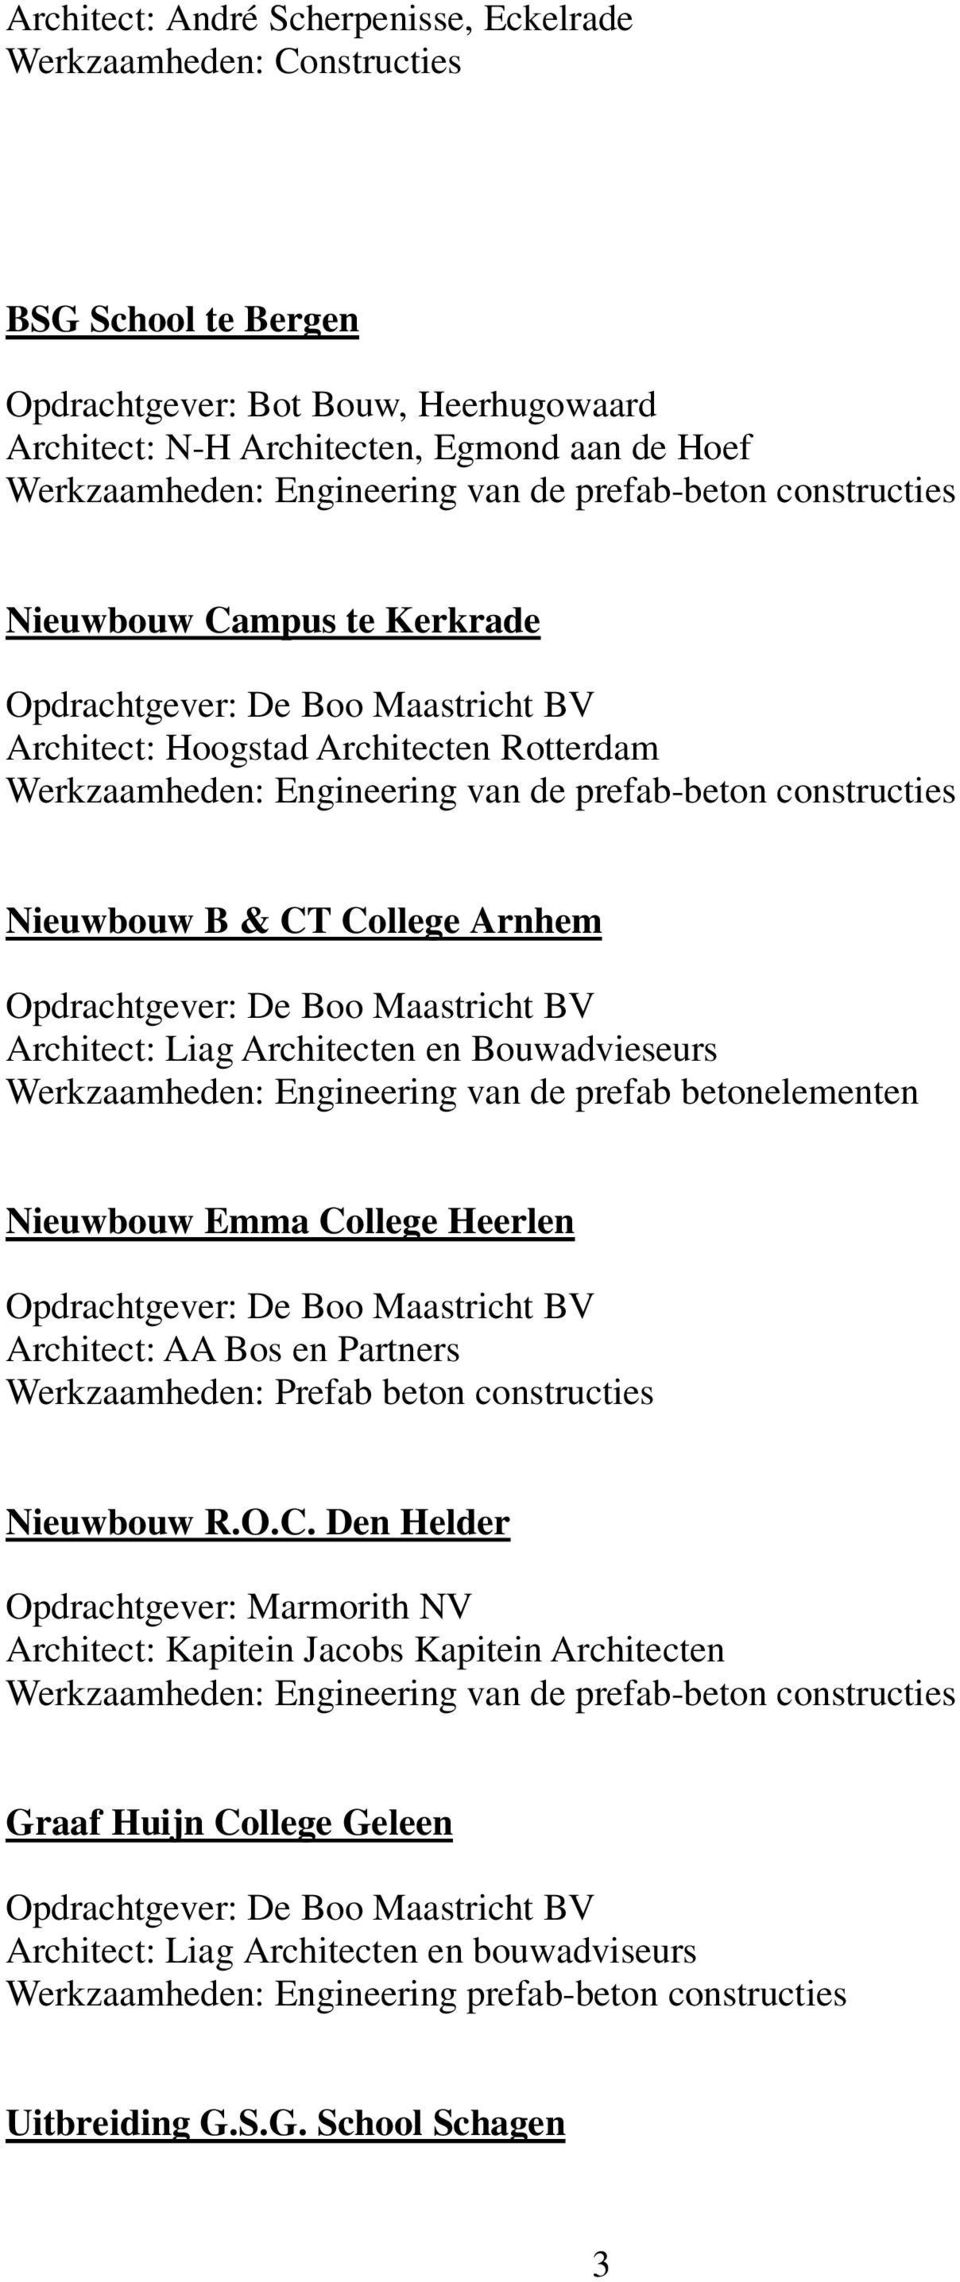 College Arnhem Opdrachtgever: De Boo Maastricht BV Architect: Liag Architecten en Bouwadvieseurs Werkzaamheden: Engineering van de prefab betonelementen Nieuwbouw Emma College Heerlen Opdrachtgever: